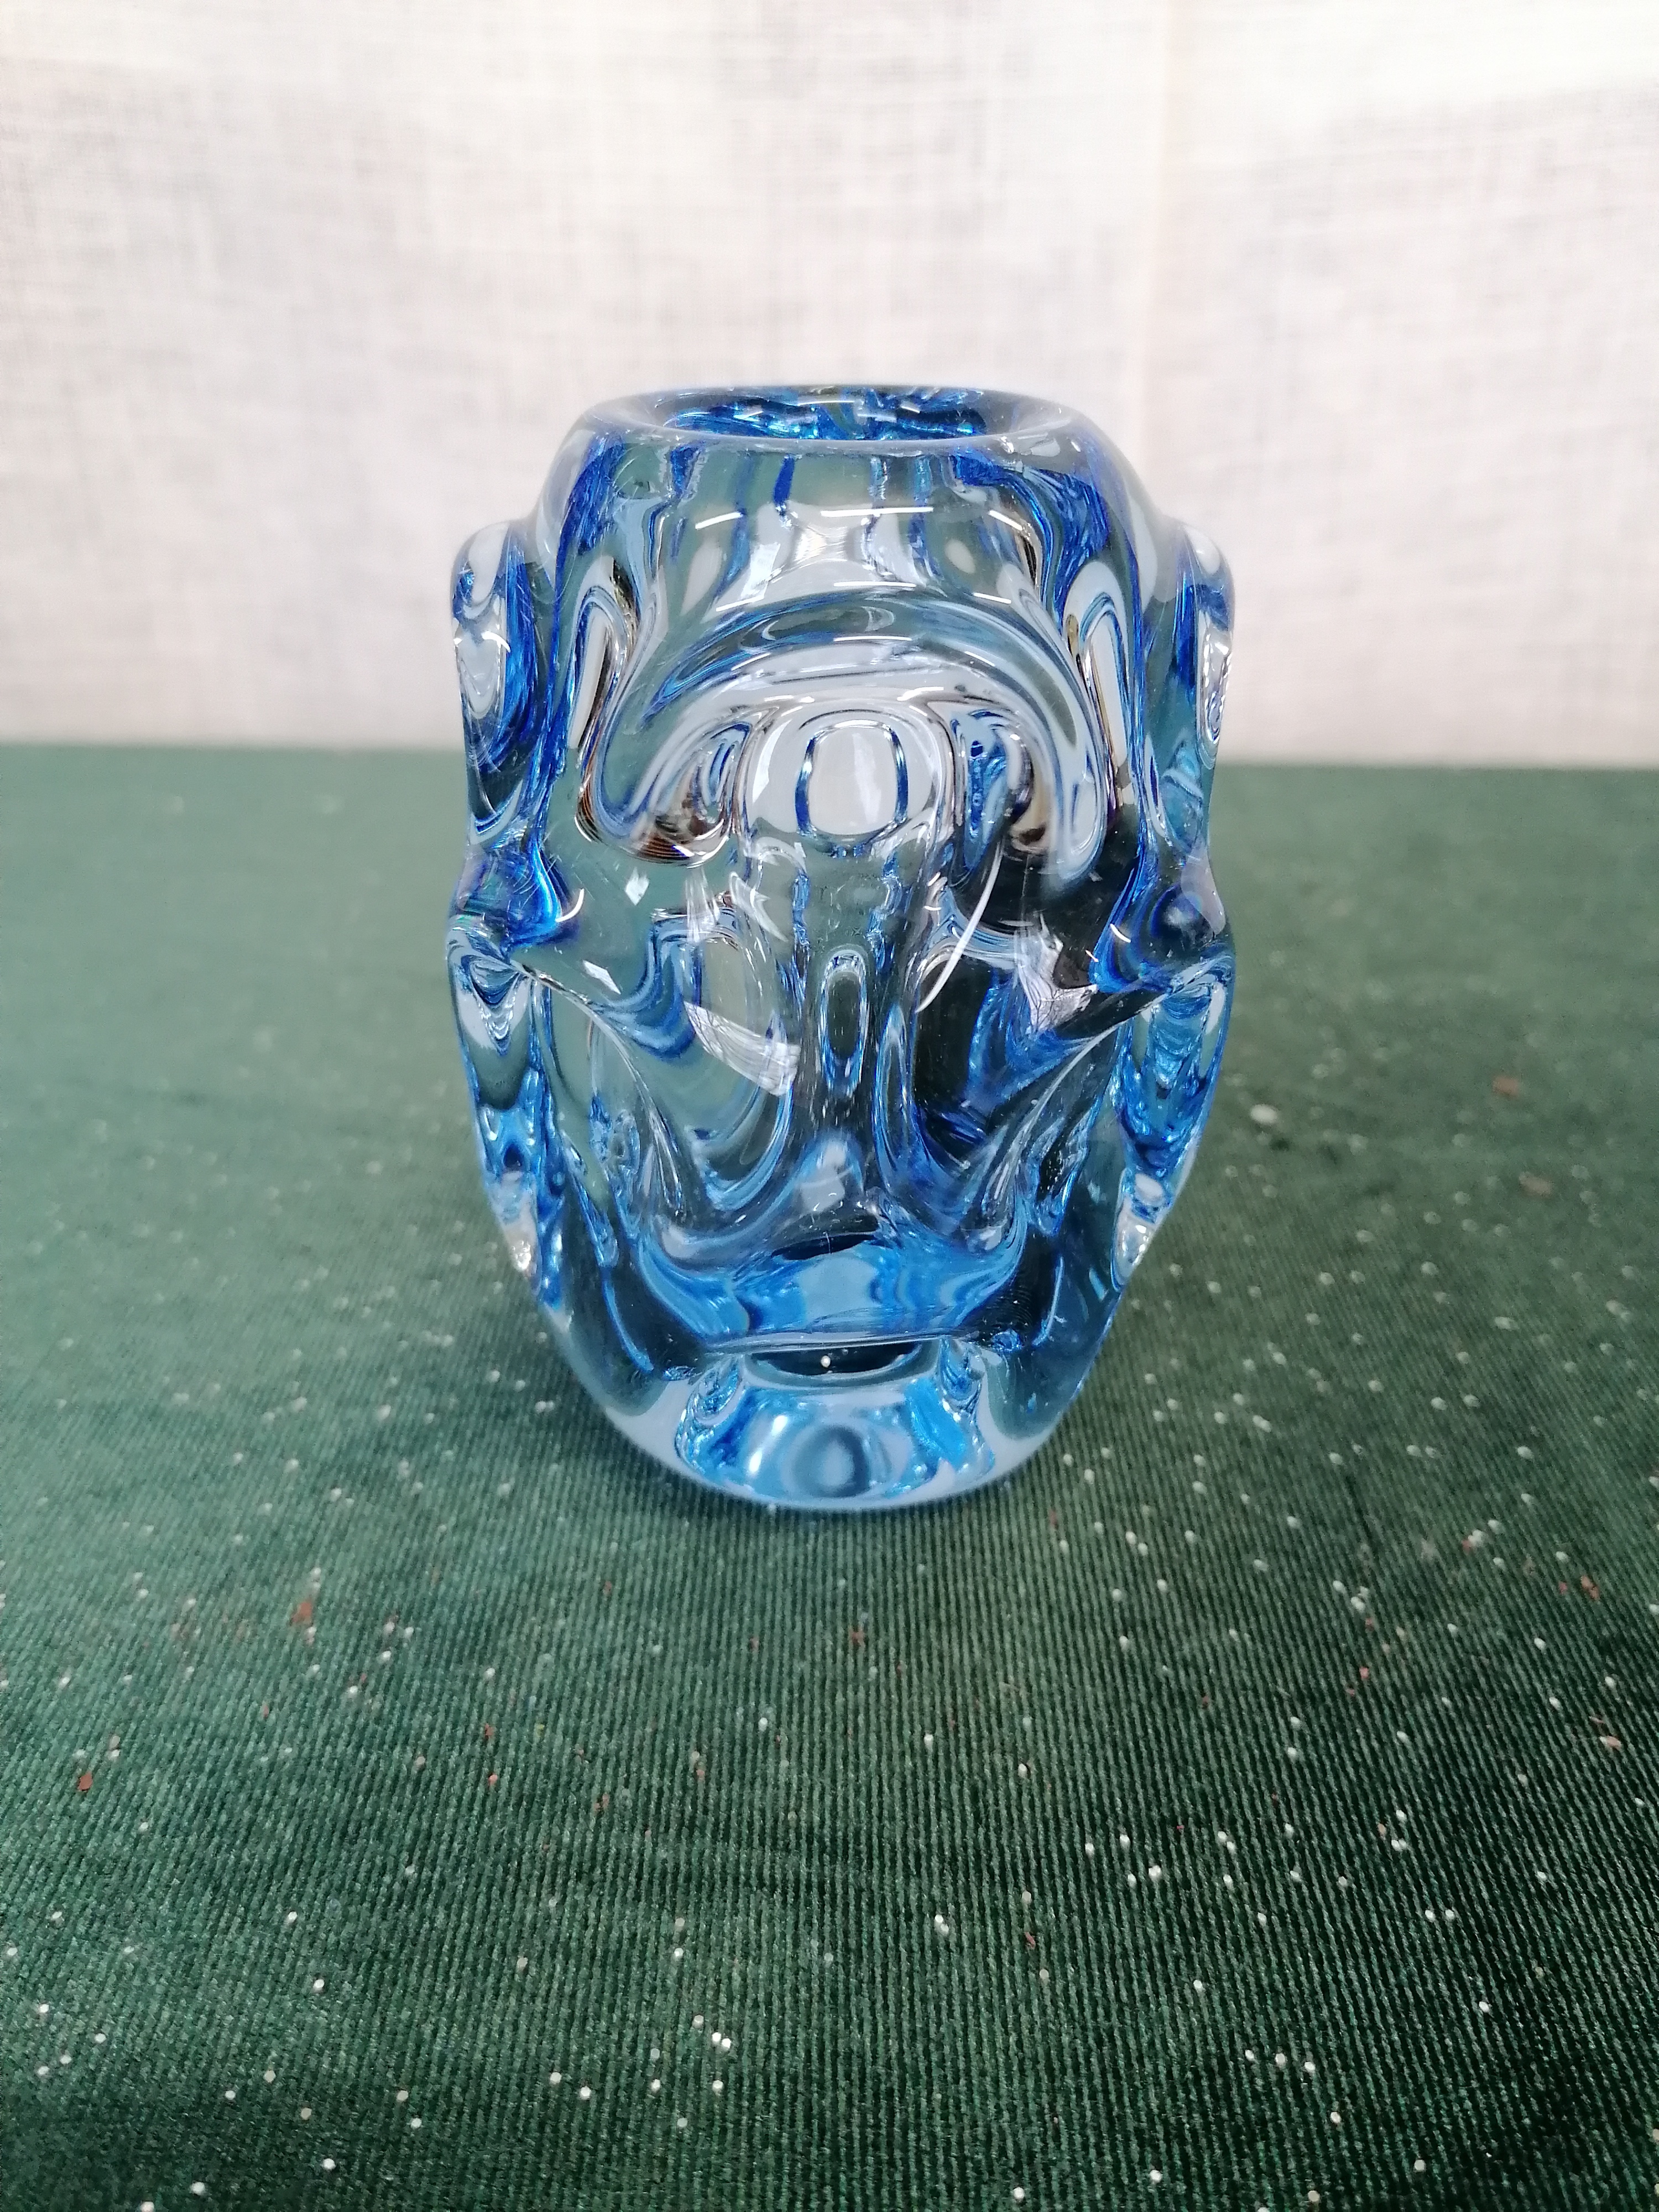 Bubblig vas från glasbruk